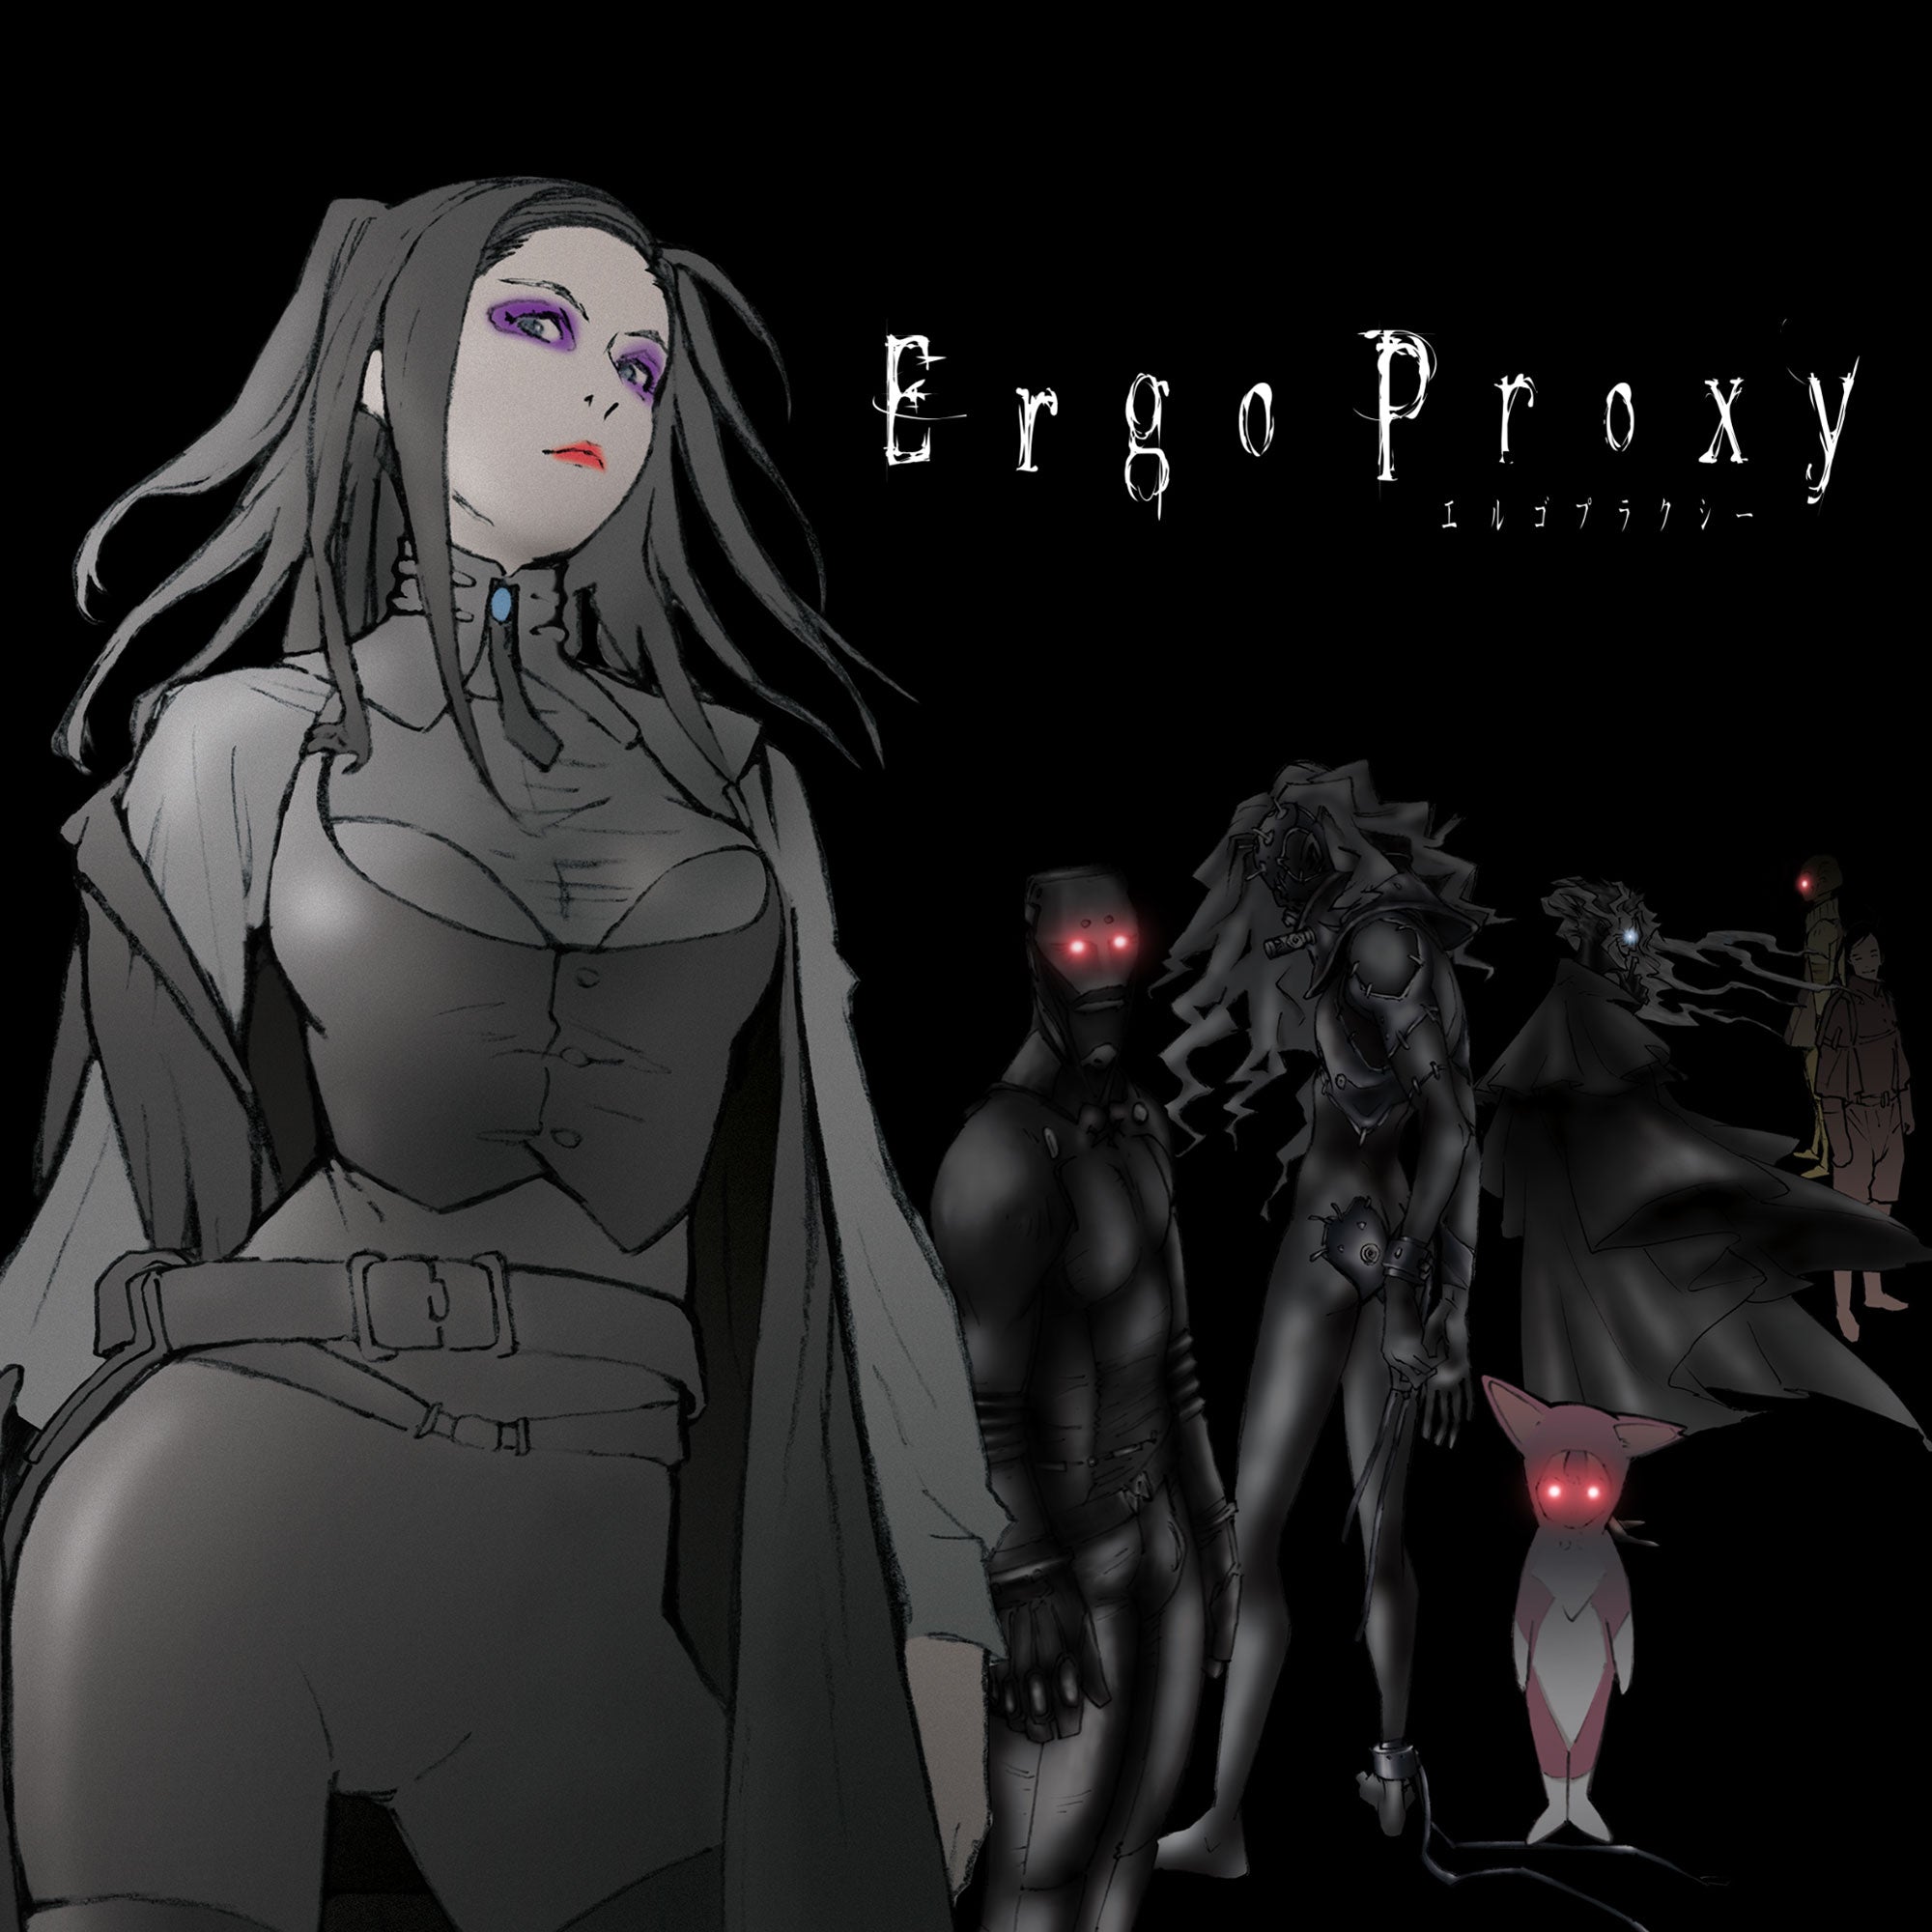 Review: Ergo Proxy